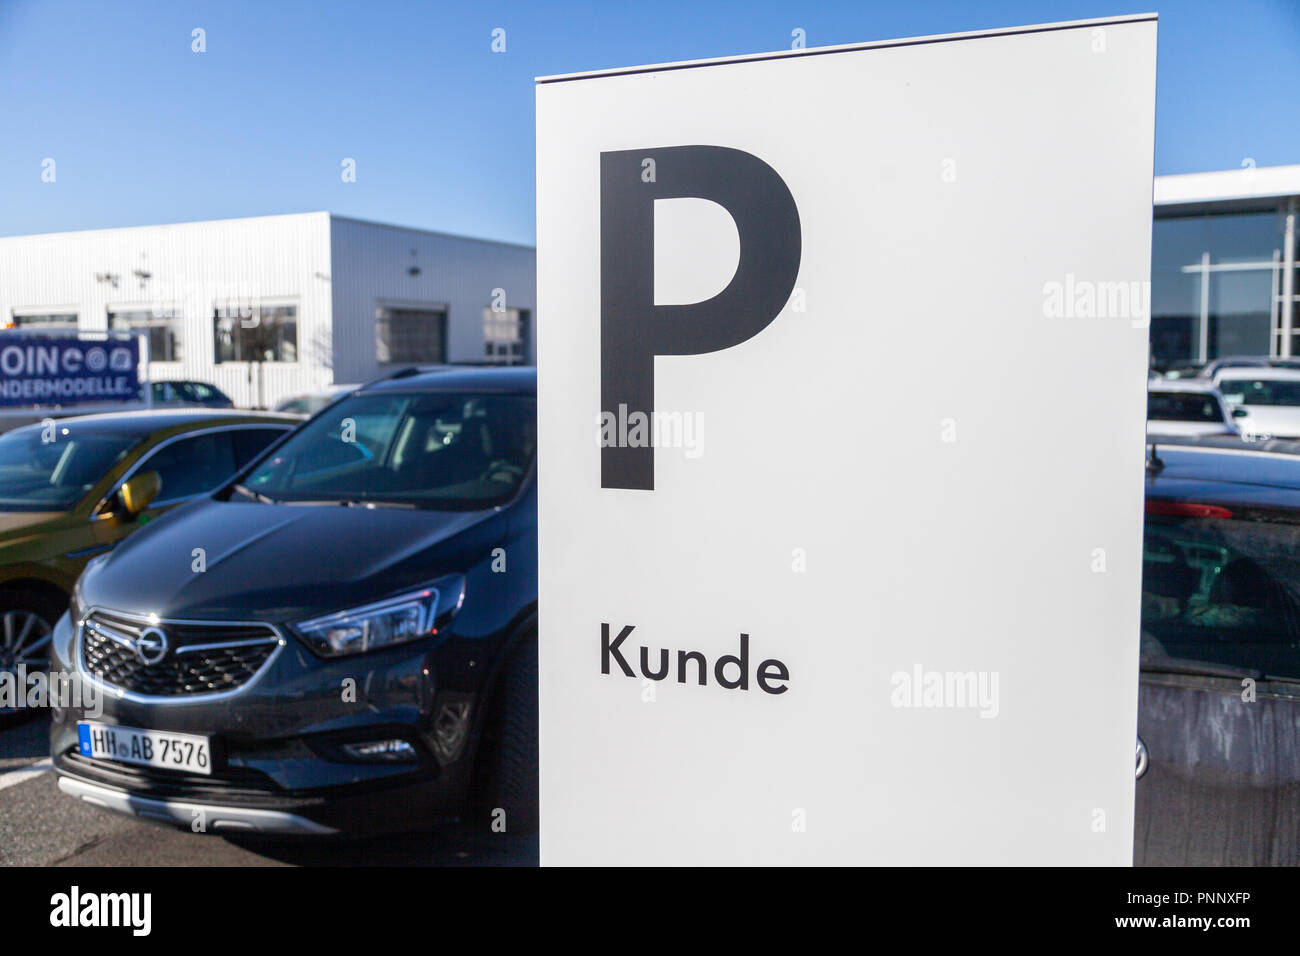 FUERTH / ALLEMAGNE - 25 février 2018 : : parking area près d'un concessionnaire Volkswagen. Moyens Kunde client. Volkswagen est une marque allemande fondée o Banque D'Images